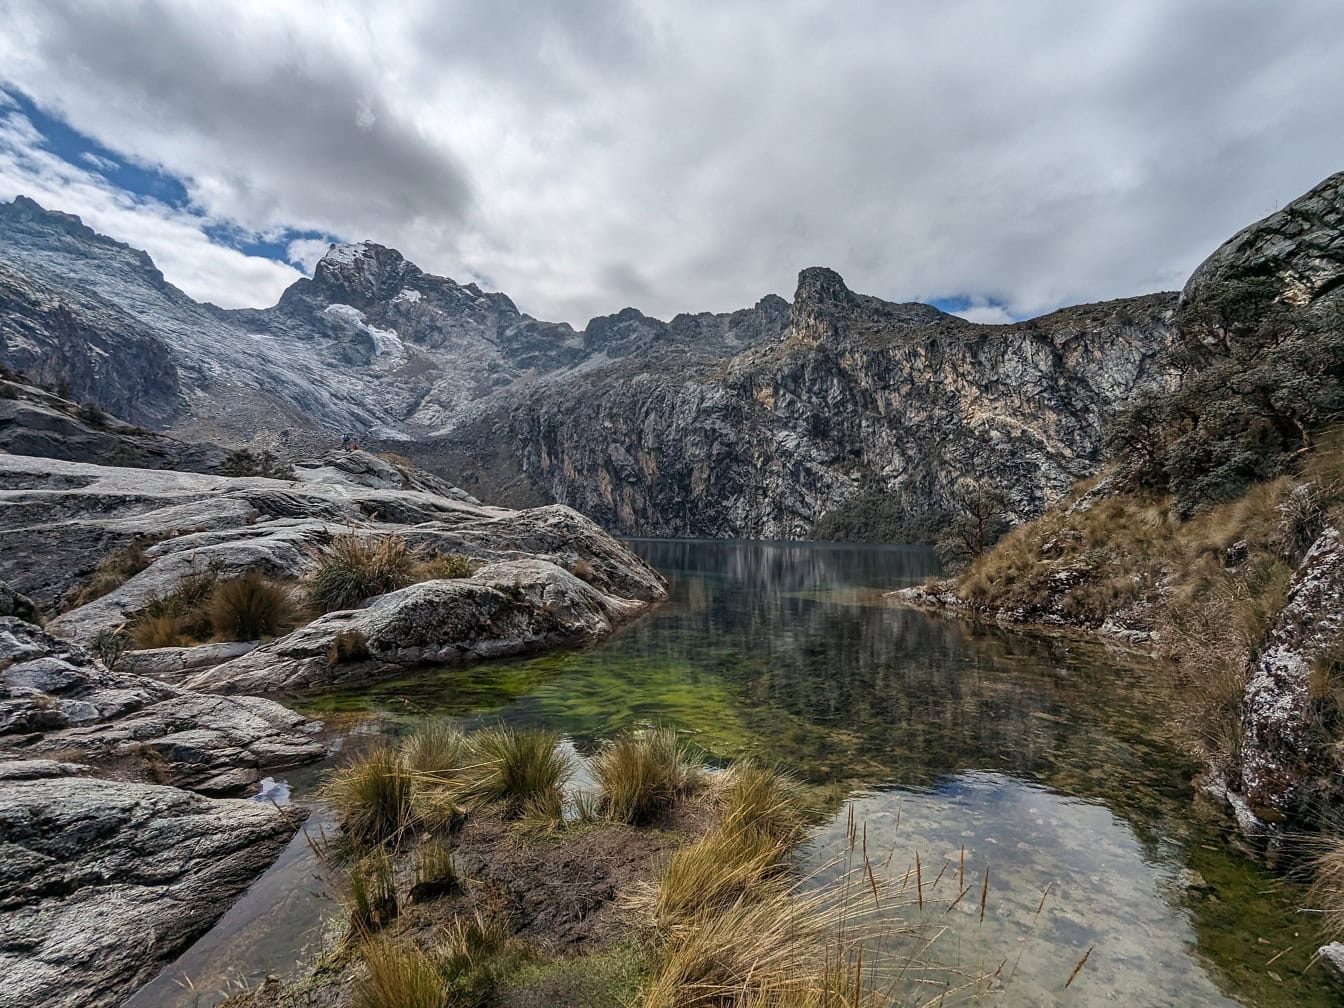 Paisagem de um lago Churup e picos nevados na montanha no parque natural nos Andes perto de Huaraz no Peru, uma vista panorâmica da América Latina